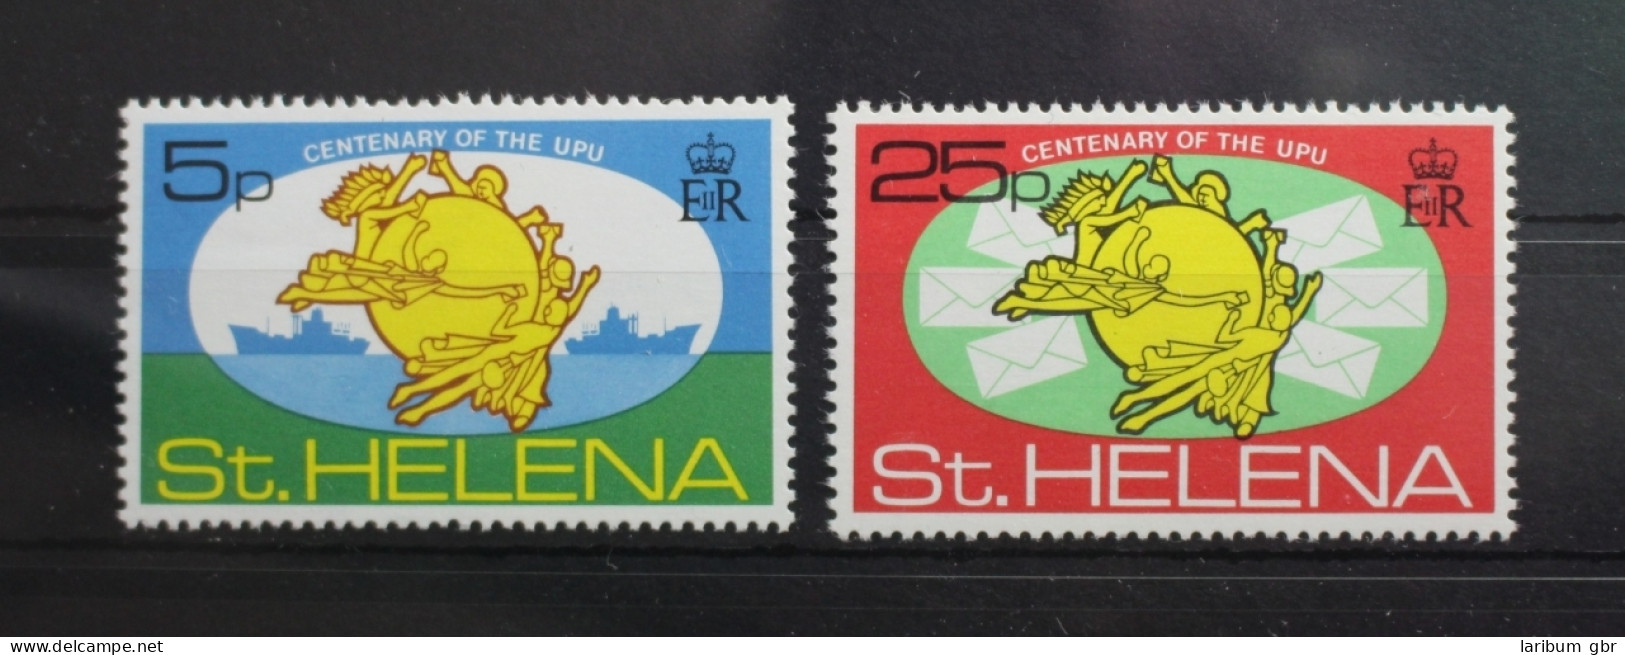 St. Helena 270-271 Postfrisch Weltpostverein UPU #SL372 - Sainte-Hélène